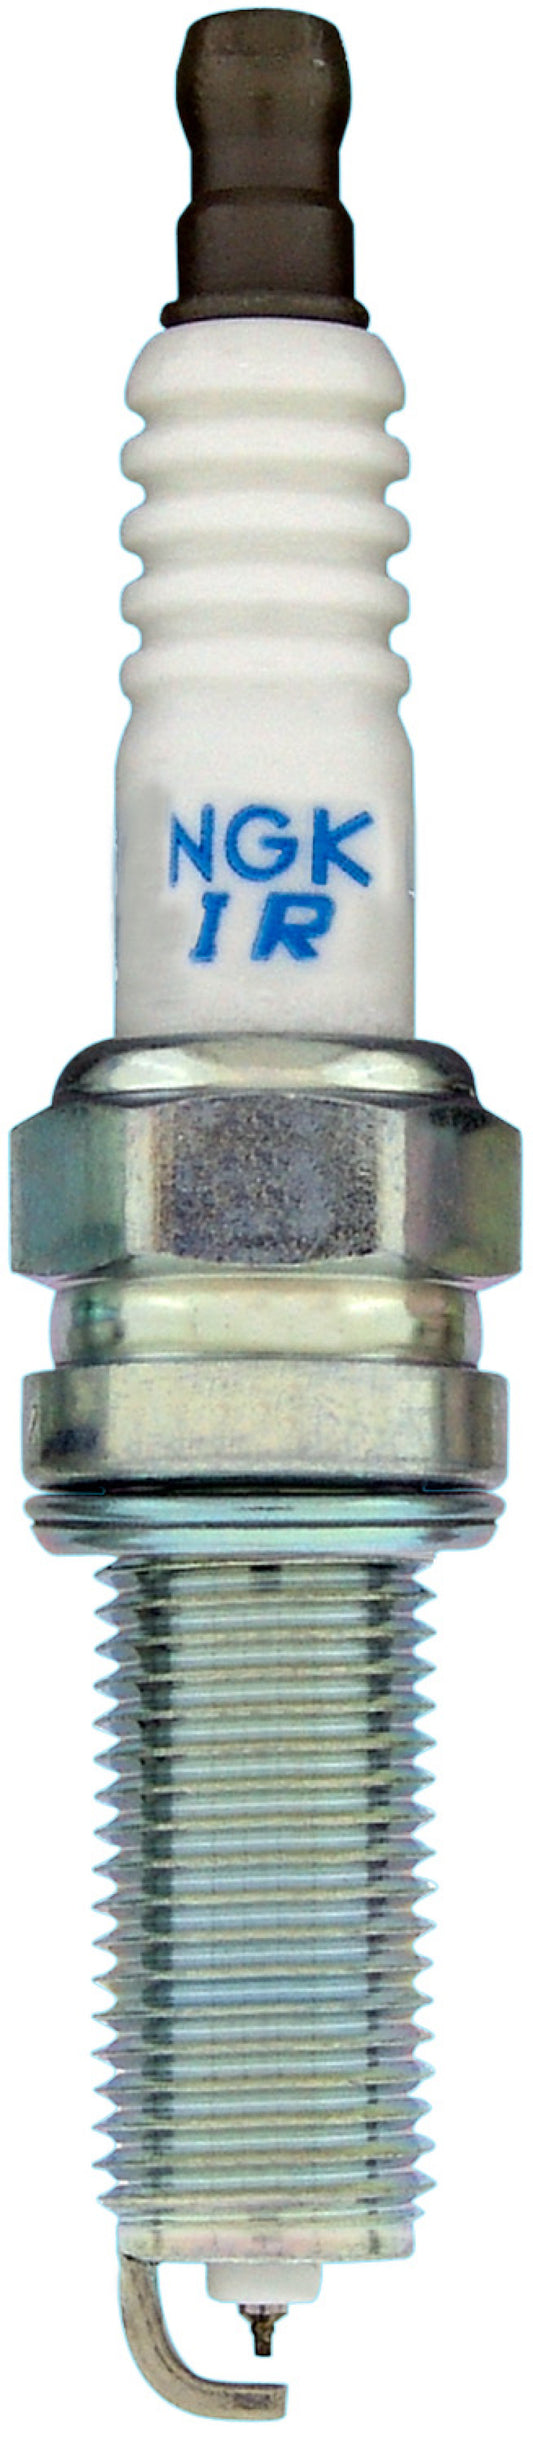 NGK Iridium/Platinum Spark Plug Box of 4 (ILKR7E6)